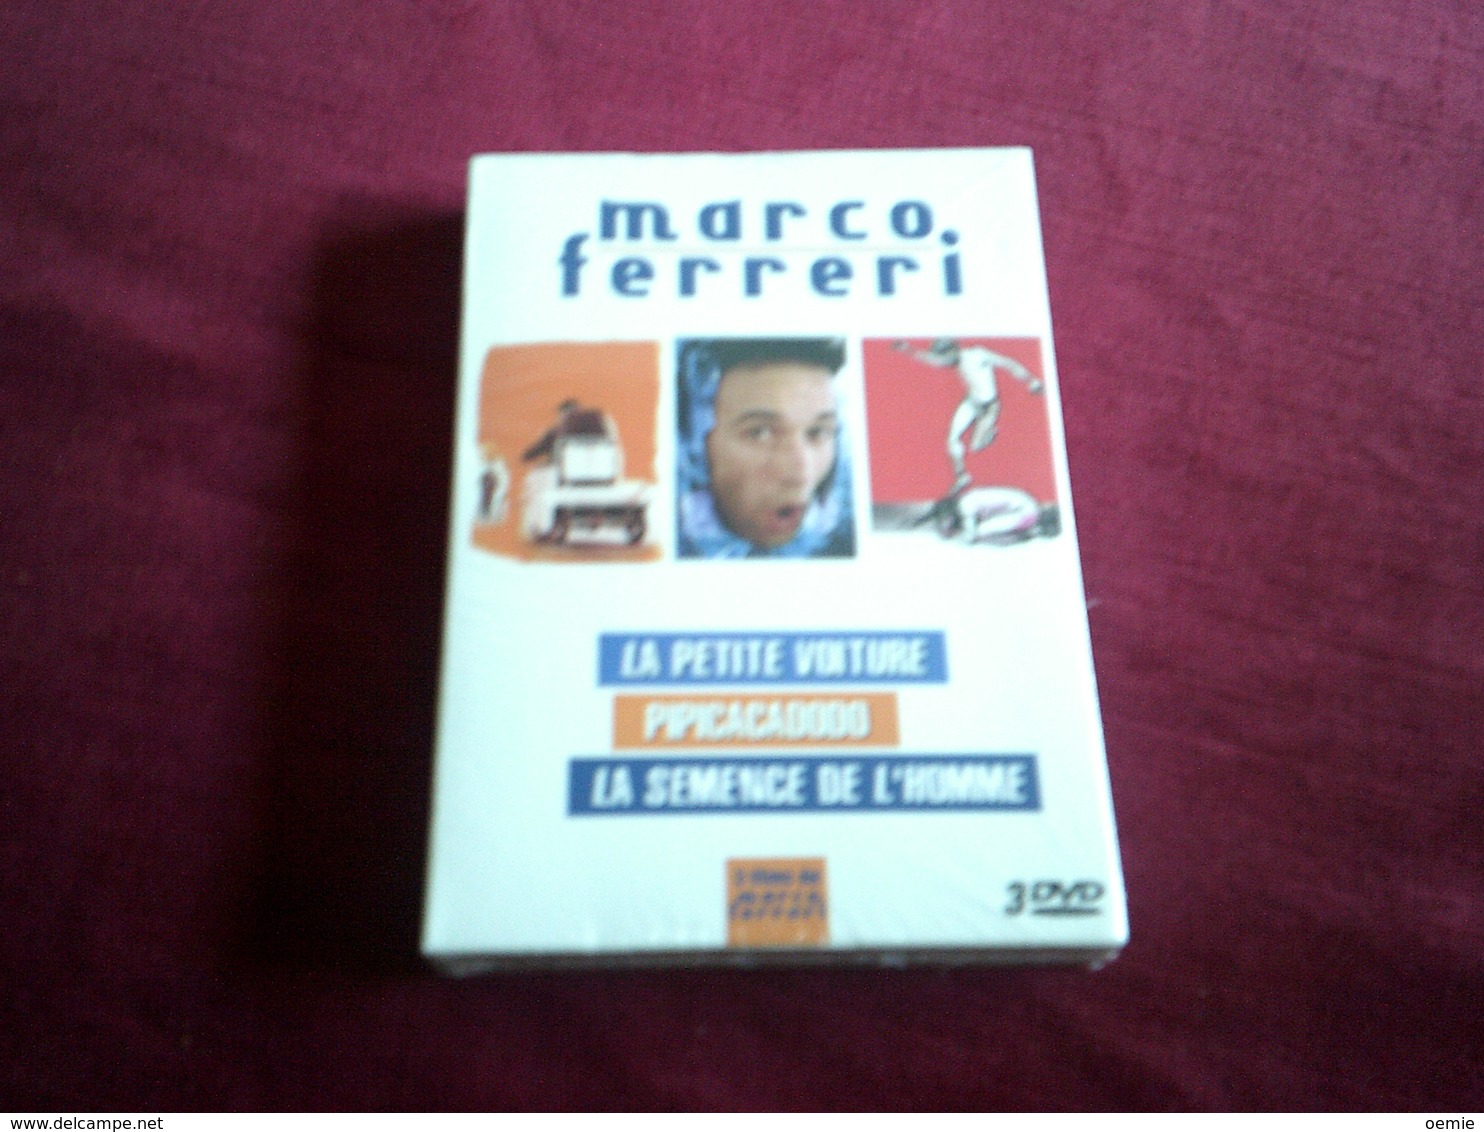 COFFRET DE MARCO FERRERI 3 FILMS NEUF EMBALLAGE D'ORIGINE  ° LA PETITE VOITURE / PIPICACADODO / LA SEMENCE DE L'HOMME - Classic